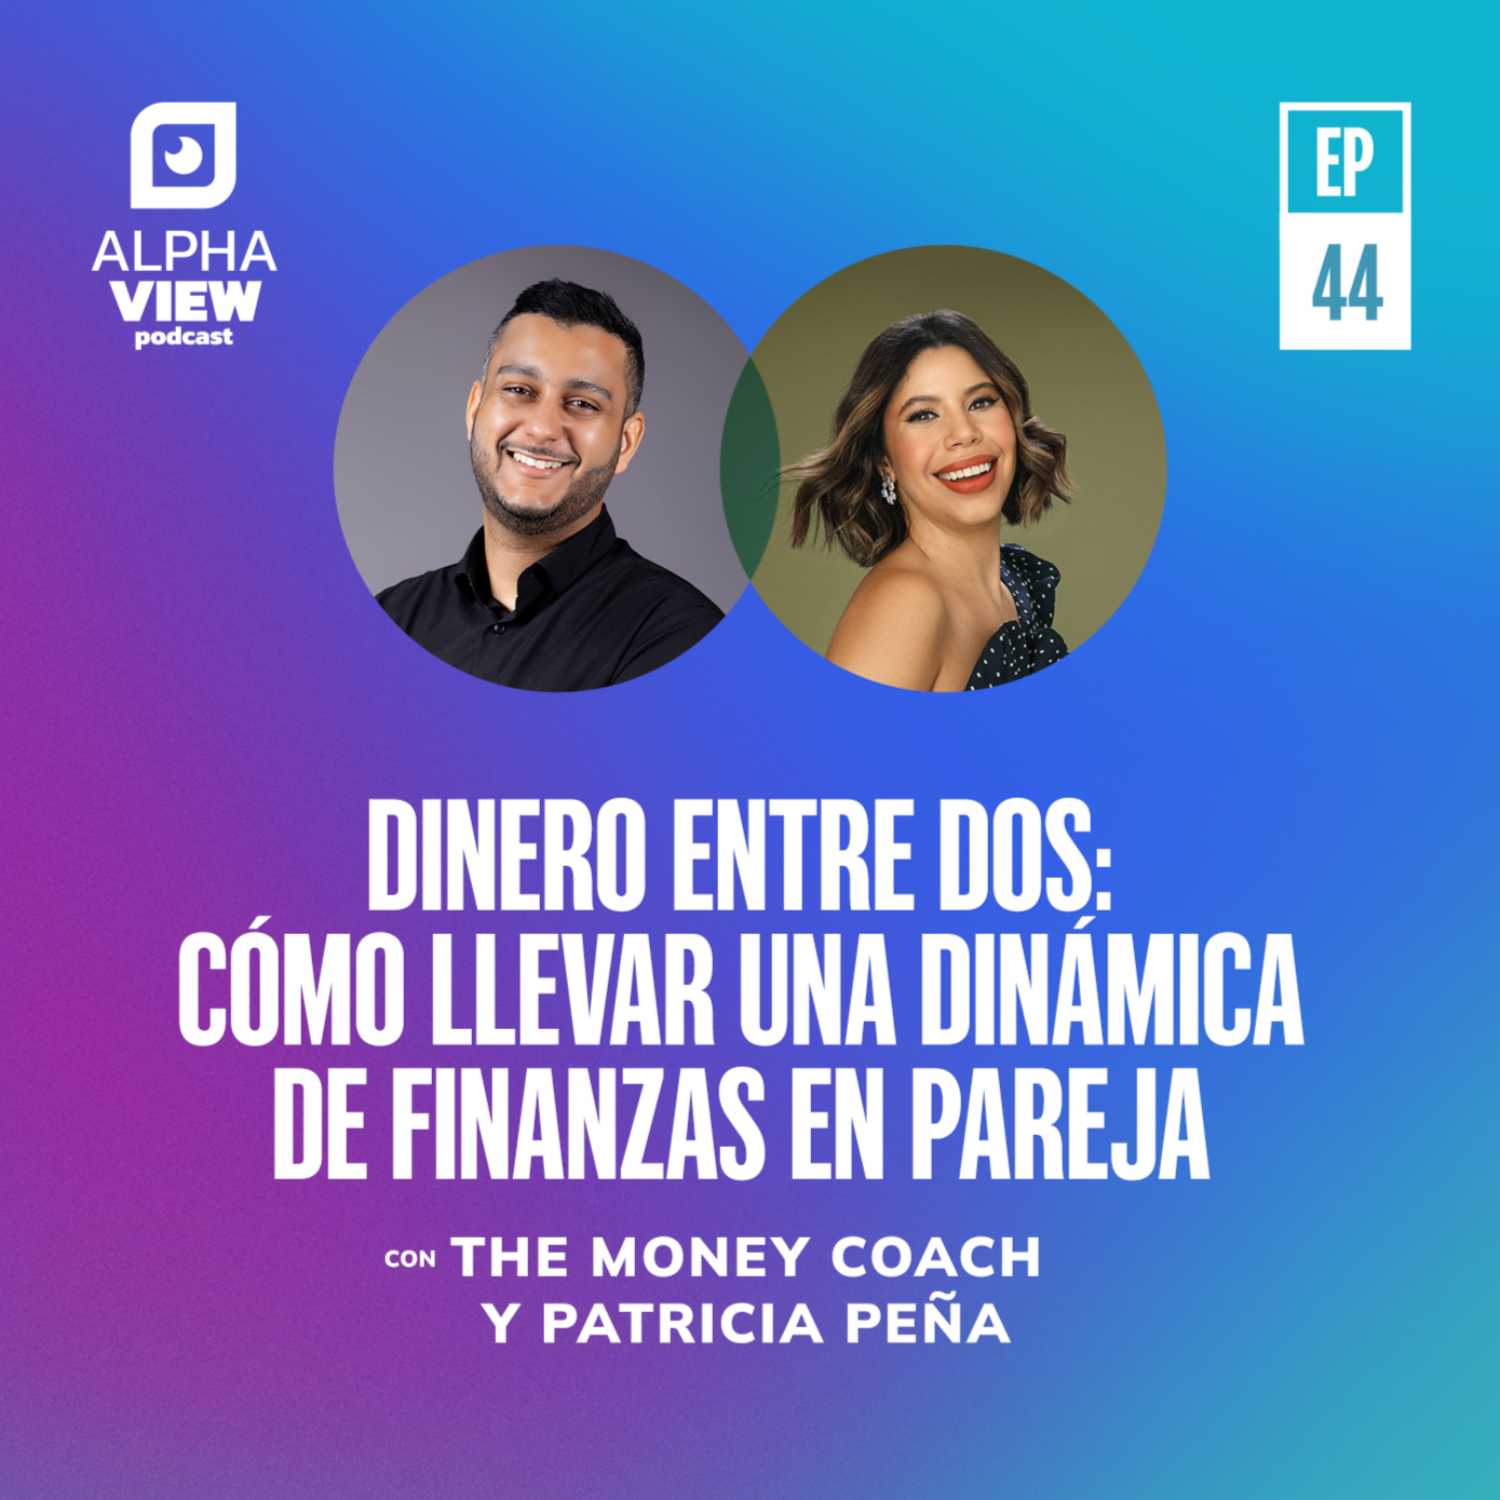 "Dinero entre dos: Cómo llevar una dinámica de finanzas en pareja" con Félix Rosa y Patricia Peña